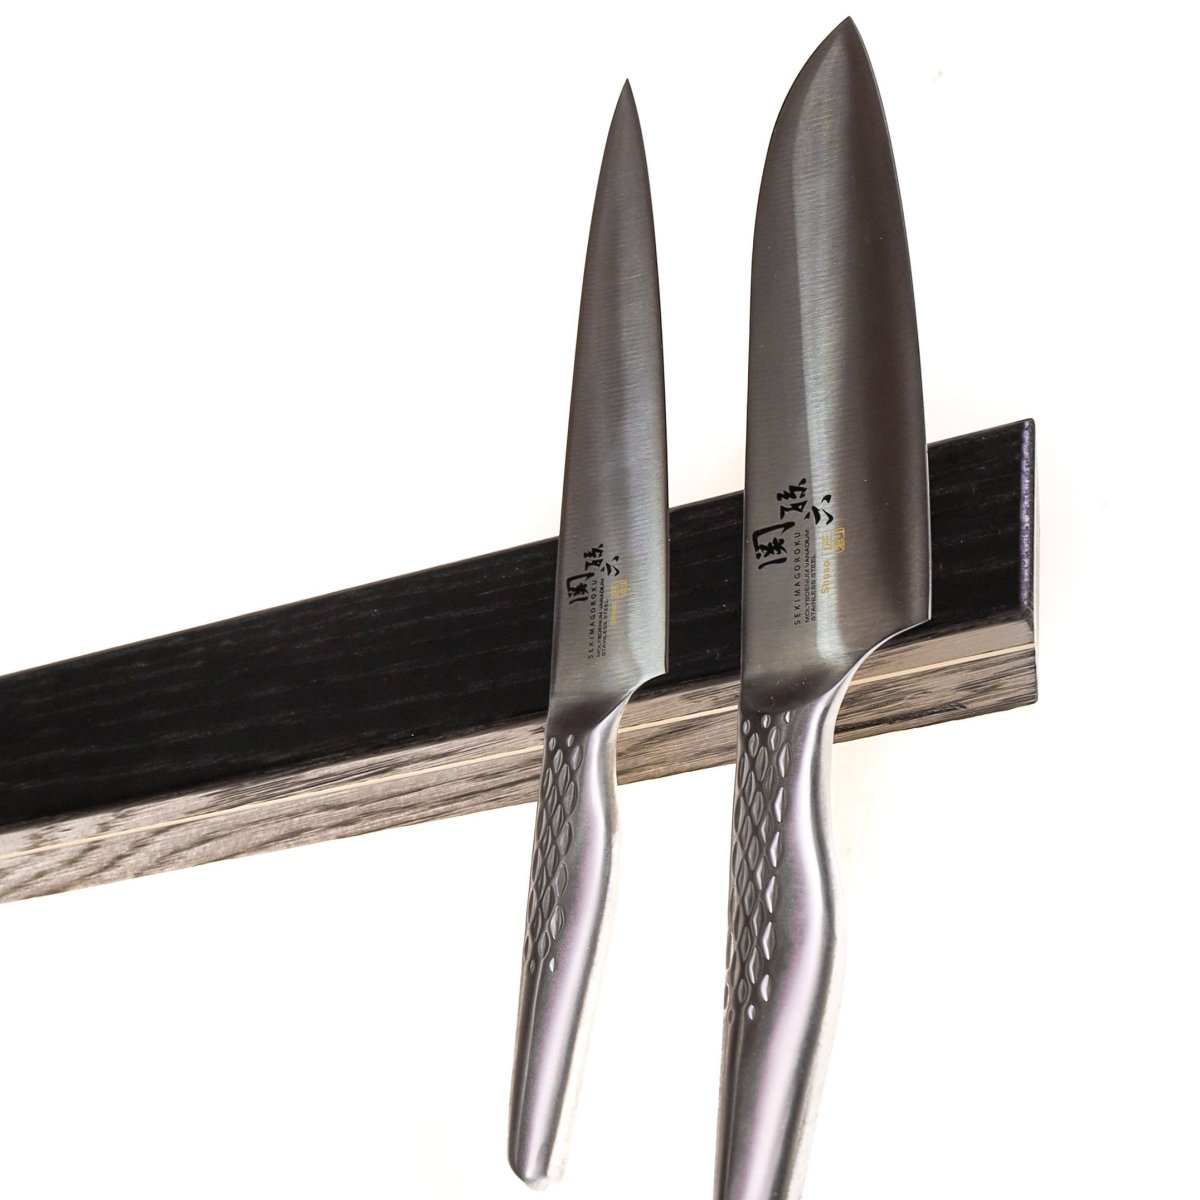 Rune-Jakobsen Woodworks 'Knifeboard Exclusive' dyb knivmagnet_7 by Rune-Jakobsen Design